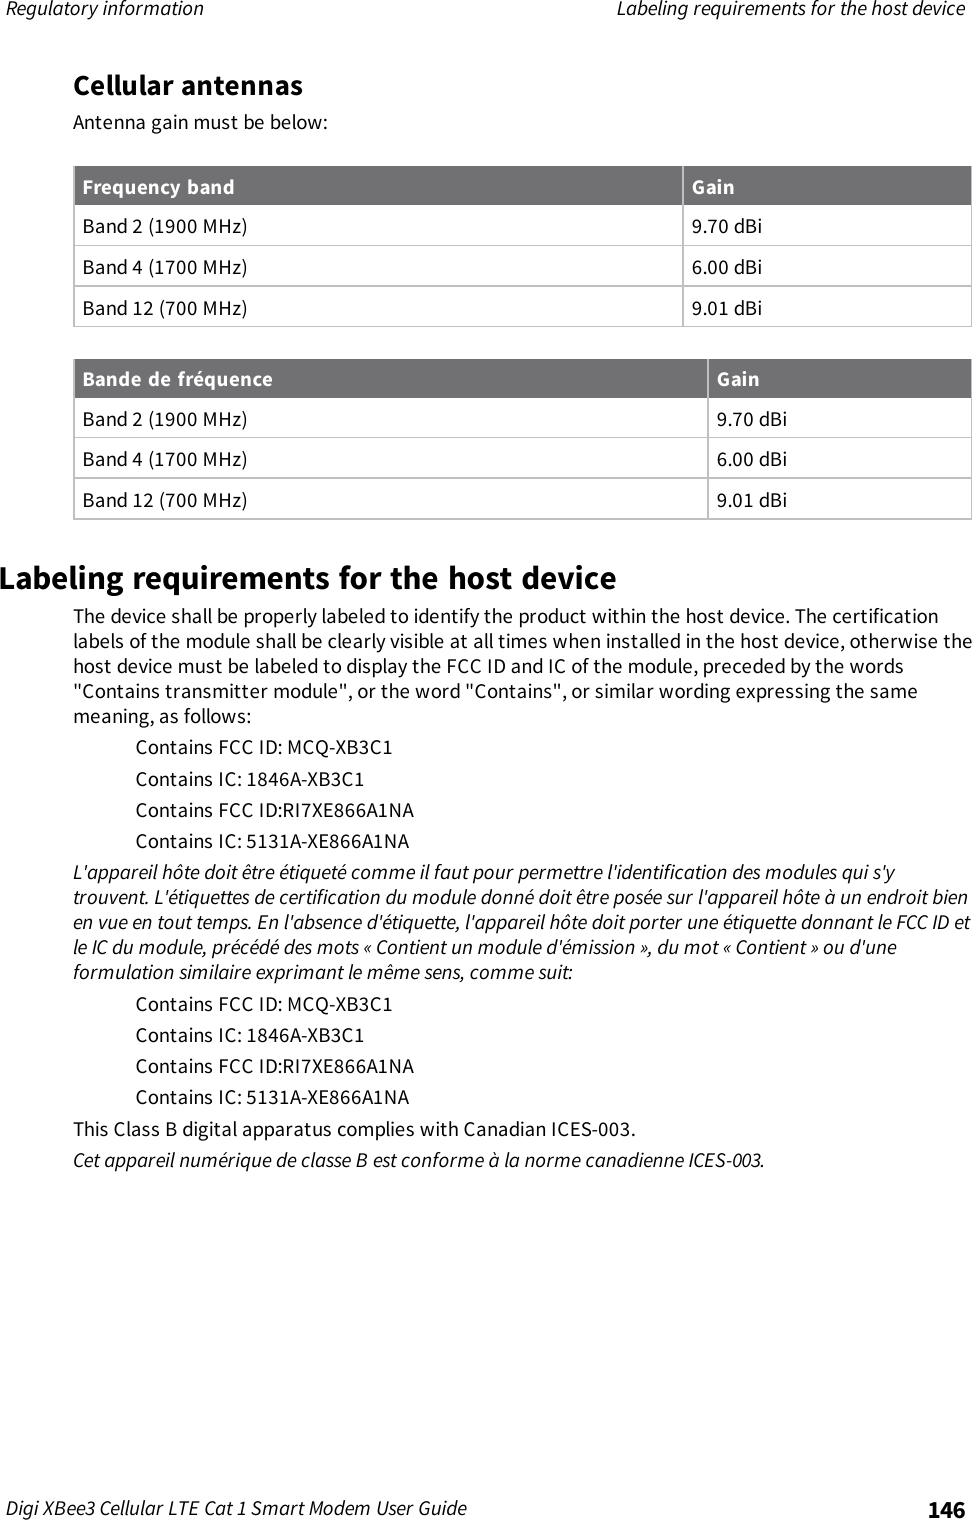 Regulatory information Labeling requirements for the host deviceDigi XBee3 Cellular LTE Cat 1 Smart Modem User Guide 146Cellular antennasAntenna gain must be below:Frequency band GainBand 2 (1900 MHz) 9.70 dBiBand 4 (1700 MHz) 6.00 dBiBand 12 (700 MHz) 9.01 dBiBande de fréquence GainBand 2 (1900 MHz) 9.70 dBiBand 4 (1700 MHz) 6.00 dBiBand 12 (700 MHz) 9.01 dBiLabeling requirements for the host deviceThe device shall be properly labeled to identify the product within the host device. The certificationlabels of the module shall be clearly visible at all times when installed in the host device, otherwise thehost device must be labeled to display the FCC ID and IC of the module, preceded by the words&quot;Contains transmitter module&quot;, or the word &quot;Contains&quot;, or similar wording expressing the samemeaning, as follows:Contains FCC ID: MCQ-XB3C1Contains IC: 1846A-XB3C1Contains FCC ID:RI7XE866A1NAContains IC: 5131A-XE866A1NAL&apos;appareil hôte doit être étiqueté comme il faut pour permettre l&apos;identification des modules qui s&apos;ytrouvent. L&apos;étiquettes de certification du module donné doit être posée sur l&apos;appareil hôte à un endroit bienen vue en tout temps. En l&apos;absence d&apos;étiquette, l&apos;appareil hôte doit porter une étiquette donnant le FCC ID etle IC du module, précédé des mots « Contient un module d&apos;émission », du mot « Contient » ou d&apos;uneformulation similaire exprimant le même sens, comme suit:Contains FCC ID: MCQ-XB3C1Contains IC: 1846A-XB3C1Contains FCC ID:RI7XE866A1NAContains IC: 5131A-XE866A1NAThis Class B digital apparatus complies with Canadian ICES-003.Cet appareil numérique de classe B est conforme à la norme canadienne ICES-003.